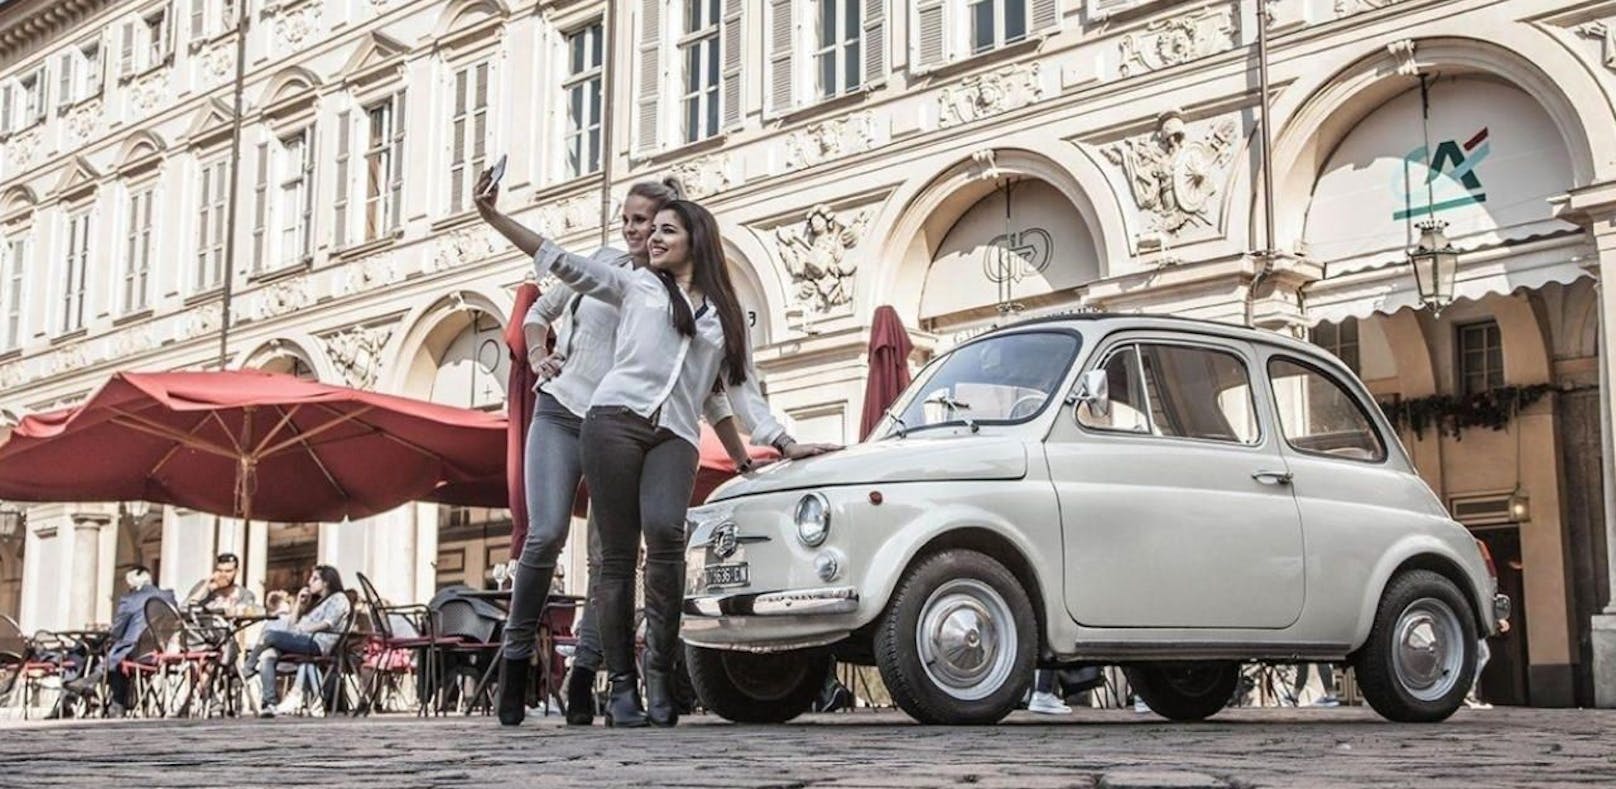 Ehre wem Ehre gebührt – Fiat 500 ist jetzt Kunst!